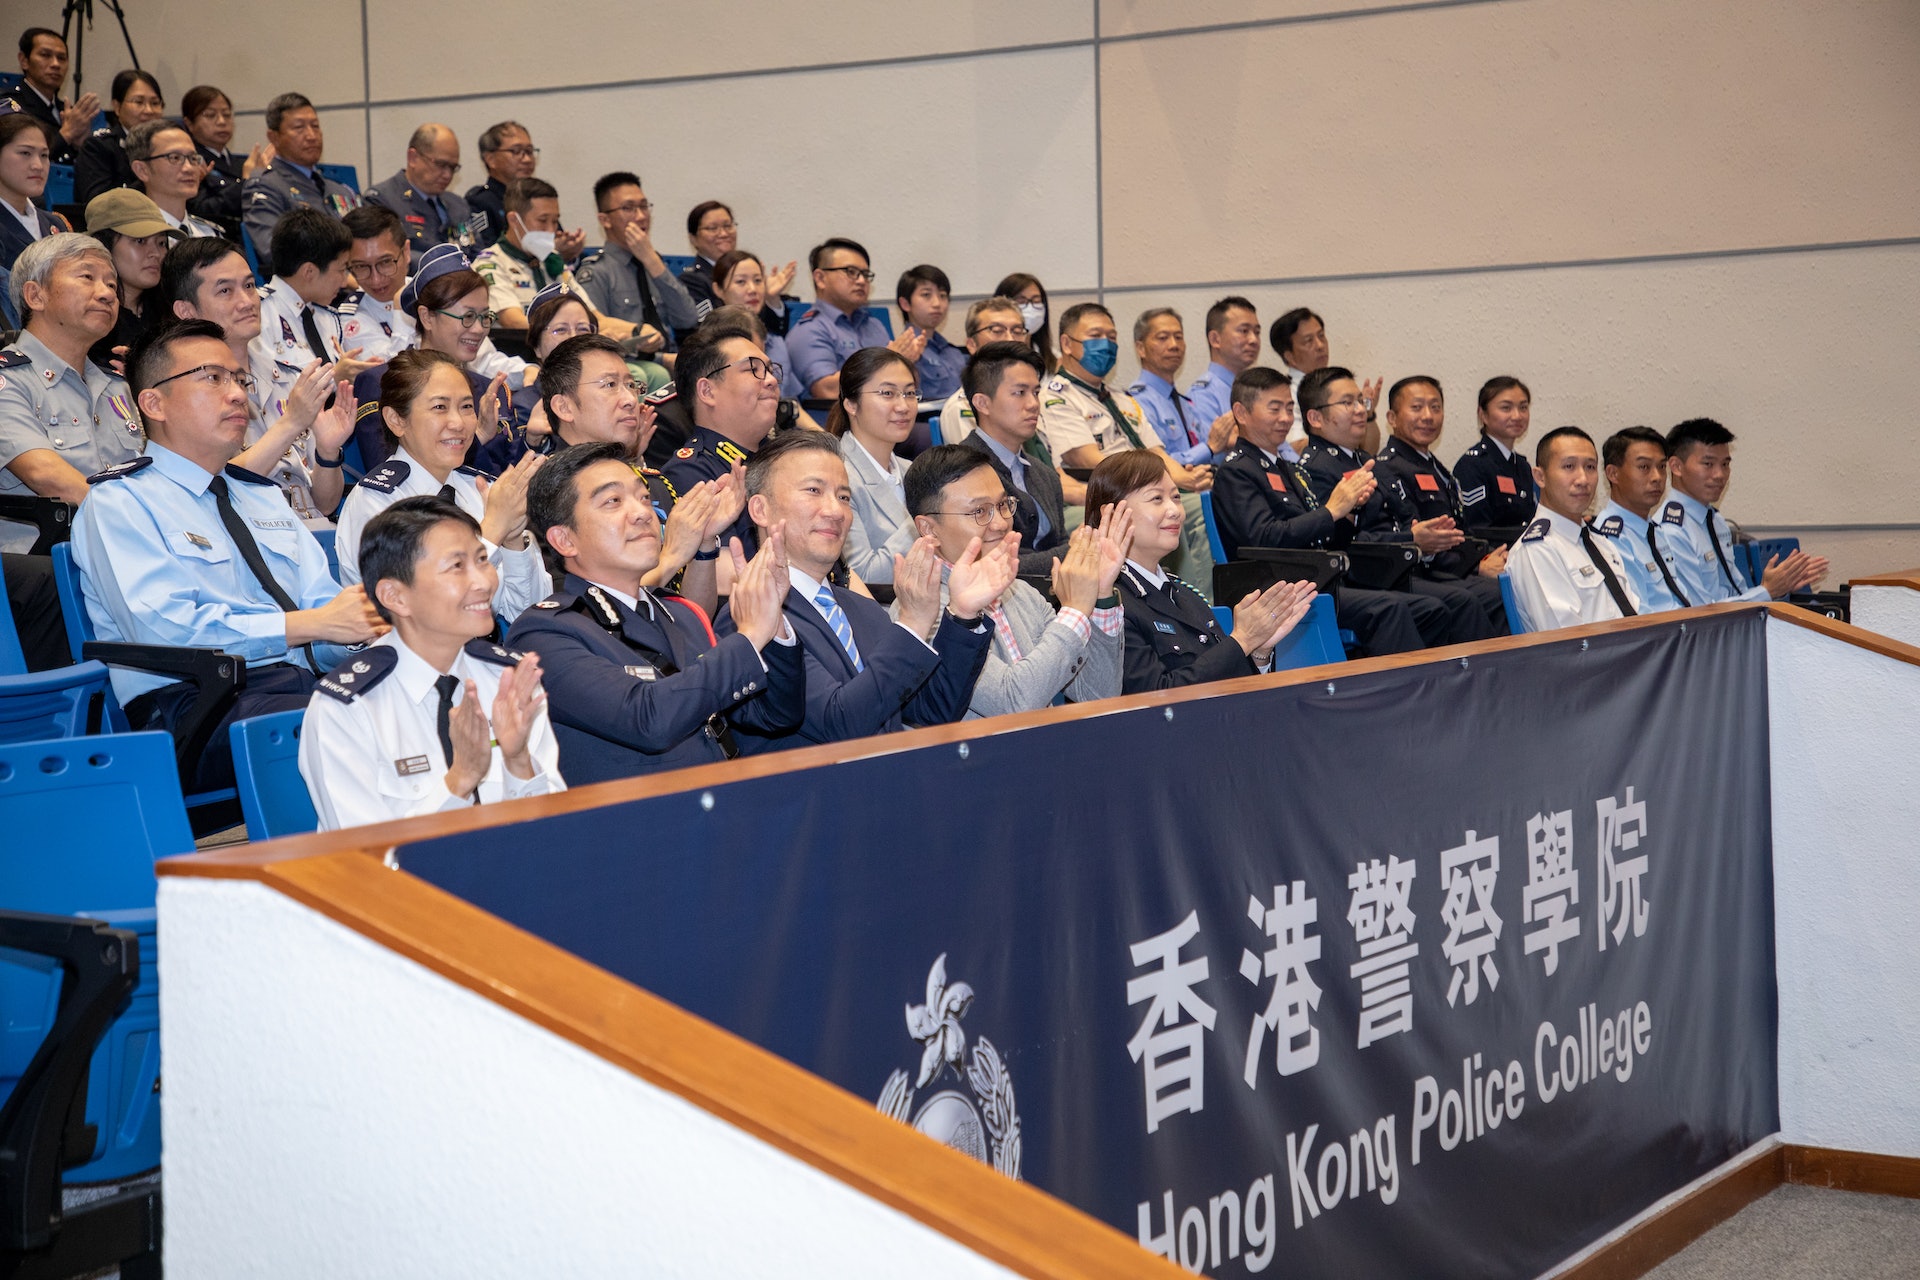 參與的56名學員是來自14個青少年制服團體的導師，包括少年警訊領袖團、民眾安全服務隊、醫療輔助隊、香港少年領袖團、香港升旗隊總會、香港交通安全隊、香港青少年軍總會、香港紅十字會青年發展服務、香港海事青年團、香港航空青年團、香港基督女少年軍、香港基督少年軍、香港童軍總會和香港聖約翰救傷隊少青團。(警方圖片)